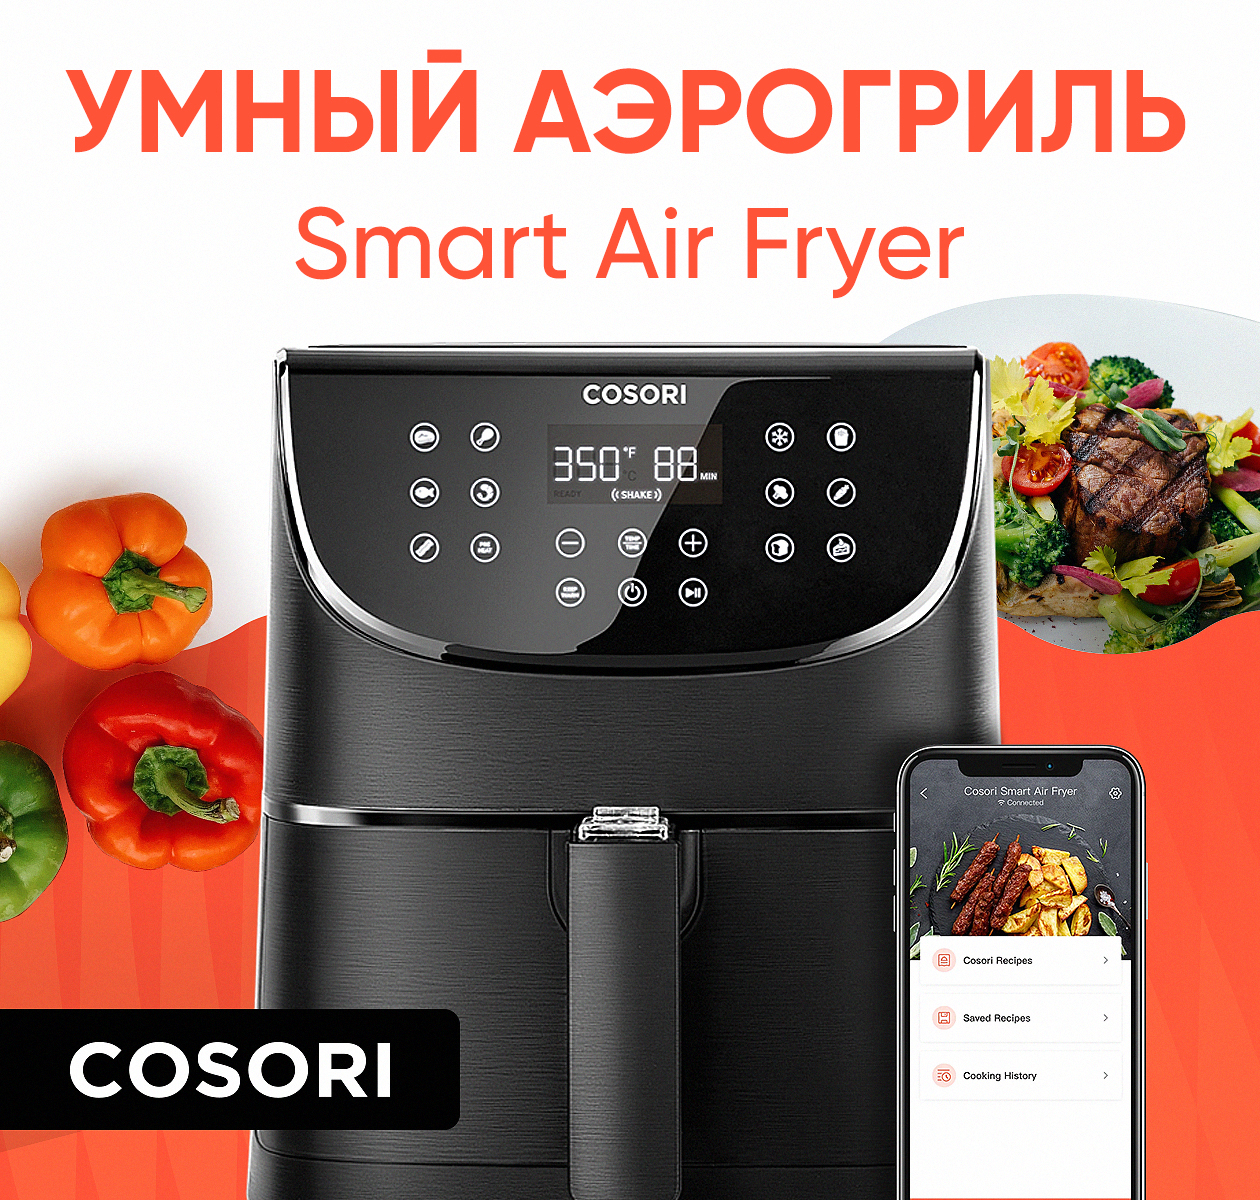 Аэрогриль COSORI Smart Air Fryer CS158-AF черный аэрогриль xiaomi mi smart air fryer white maf02